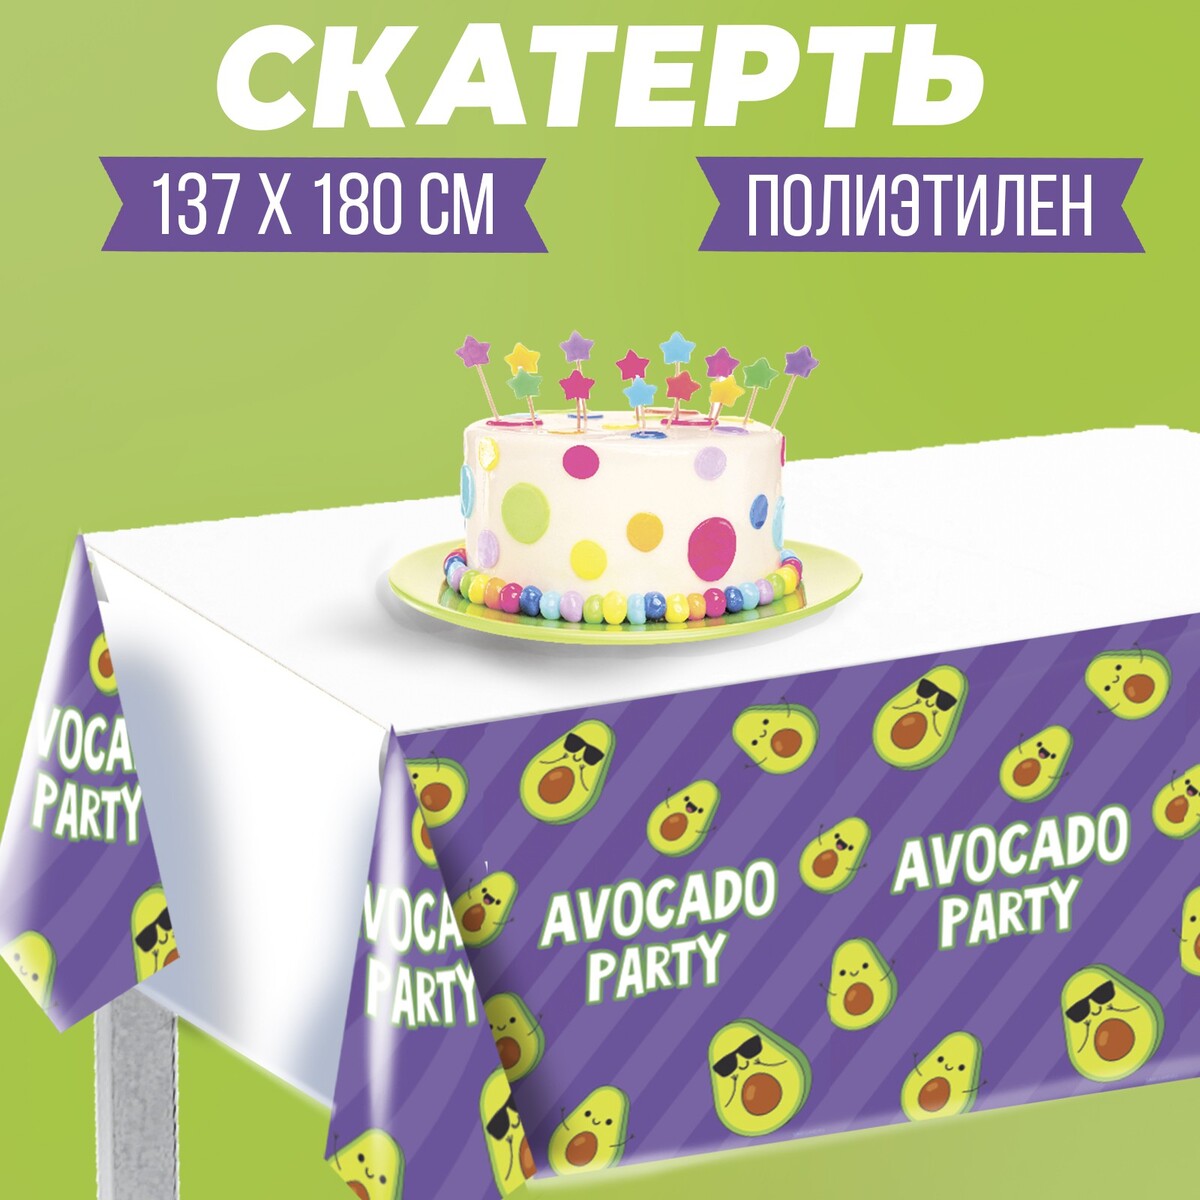 Скатерть avocado party 137×180см, фиолетовая скатерть mini boss 137×180см